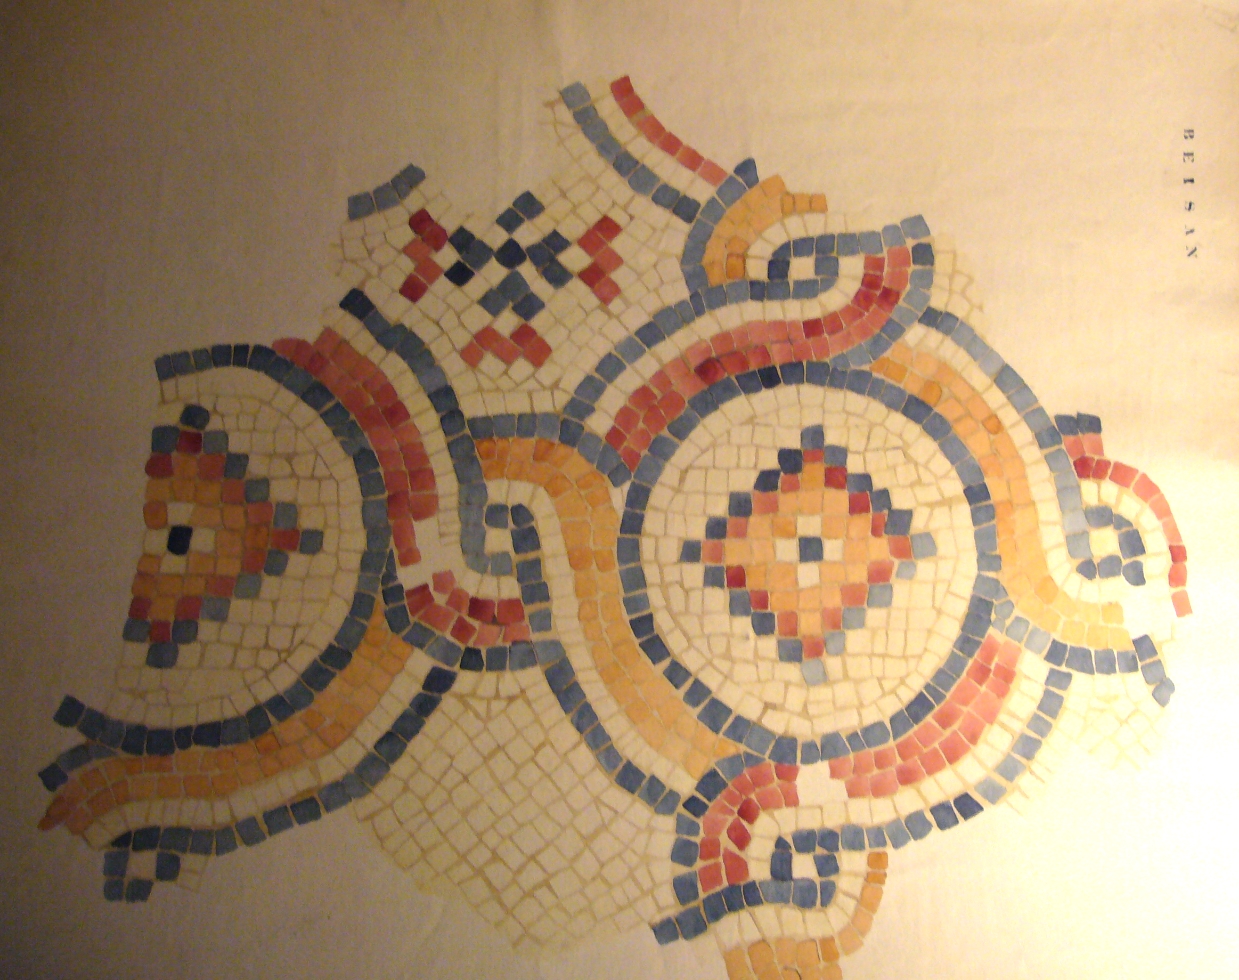 Mosaic detail